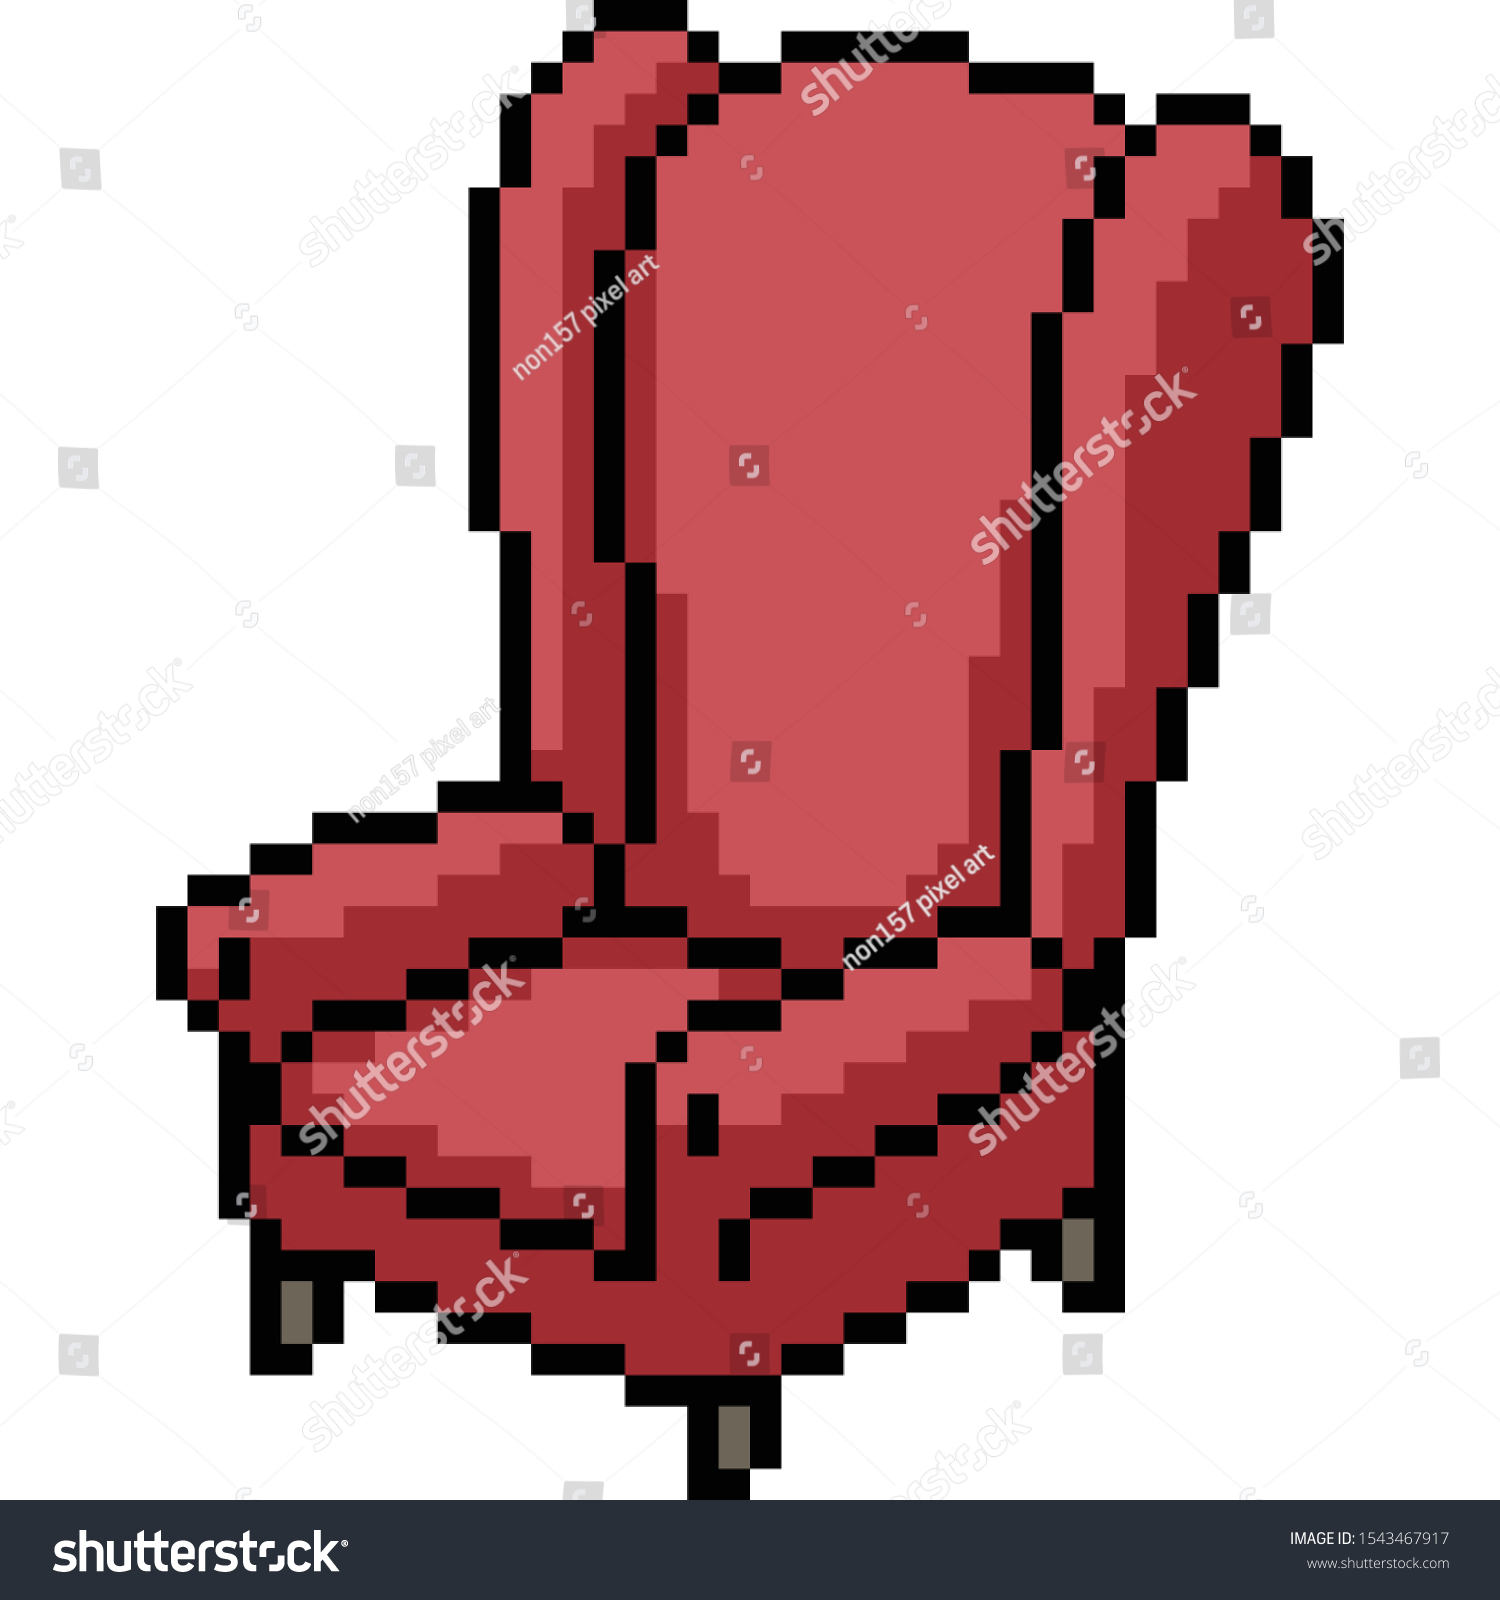 Chair pixel art pinnacle moviebox deluxe